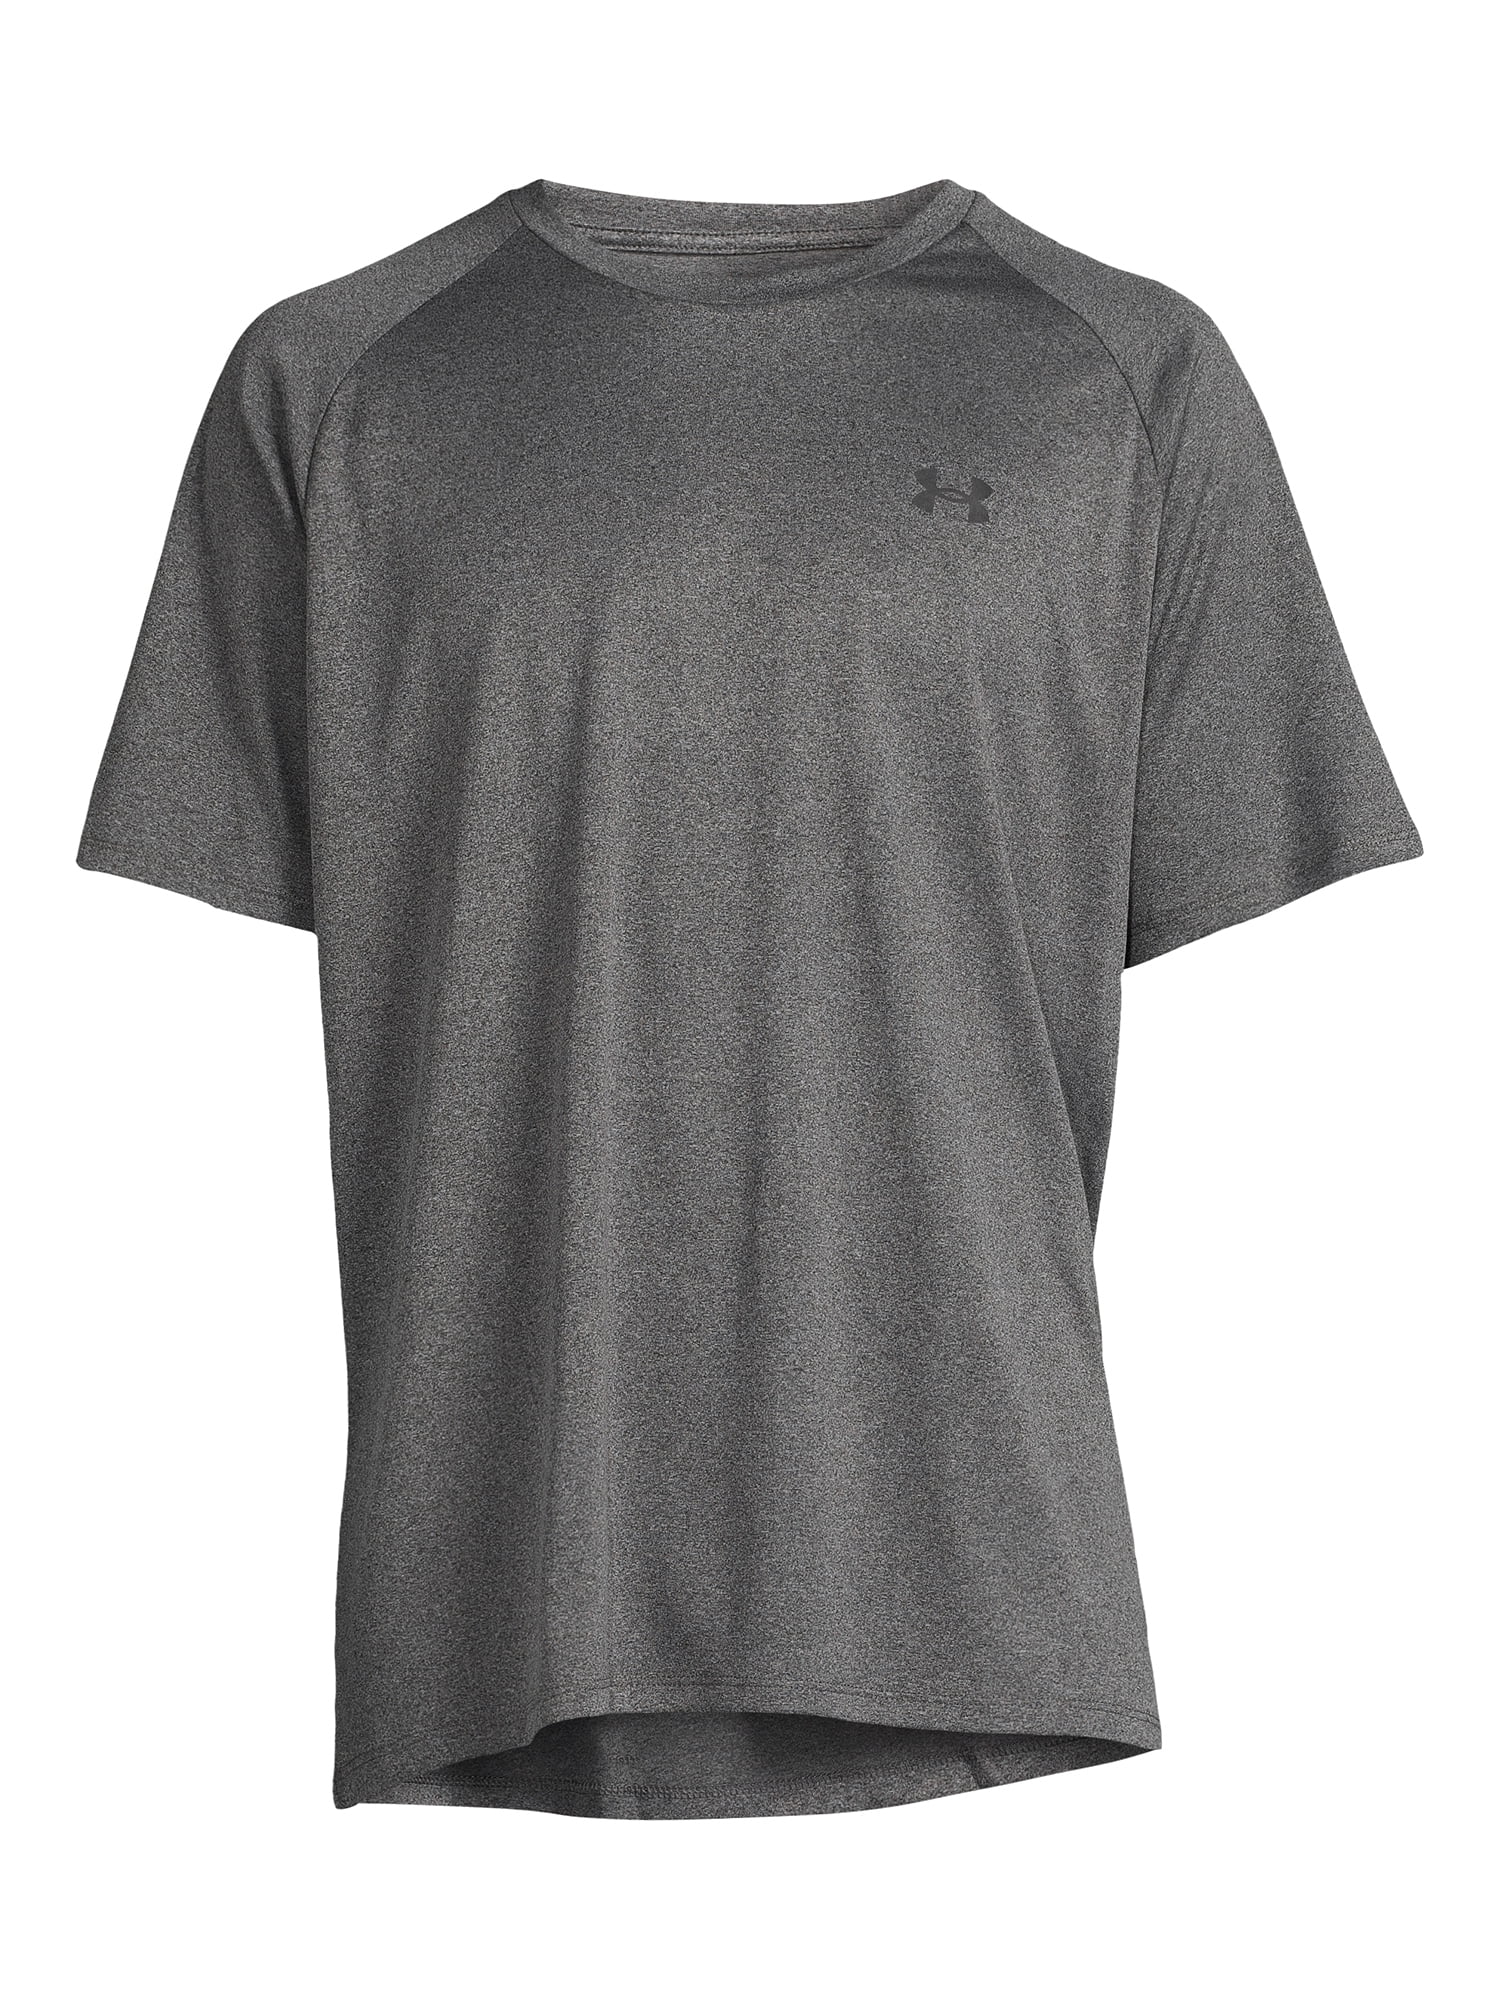 Under Men's and Big Men's Tech 2.0 Short Sleeve T-Shirt, Sizes S-2XL - Walmart.com